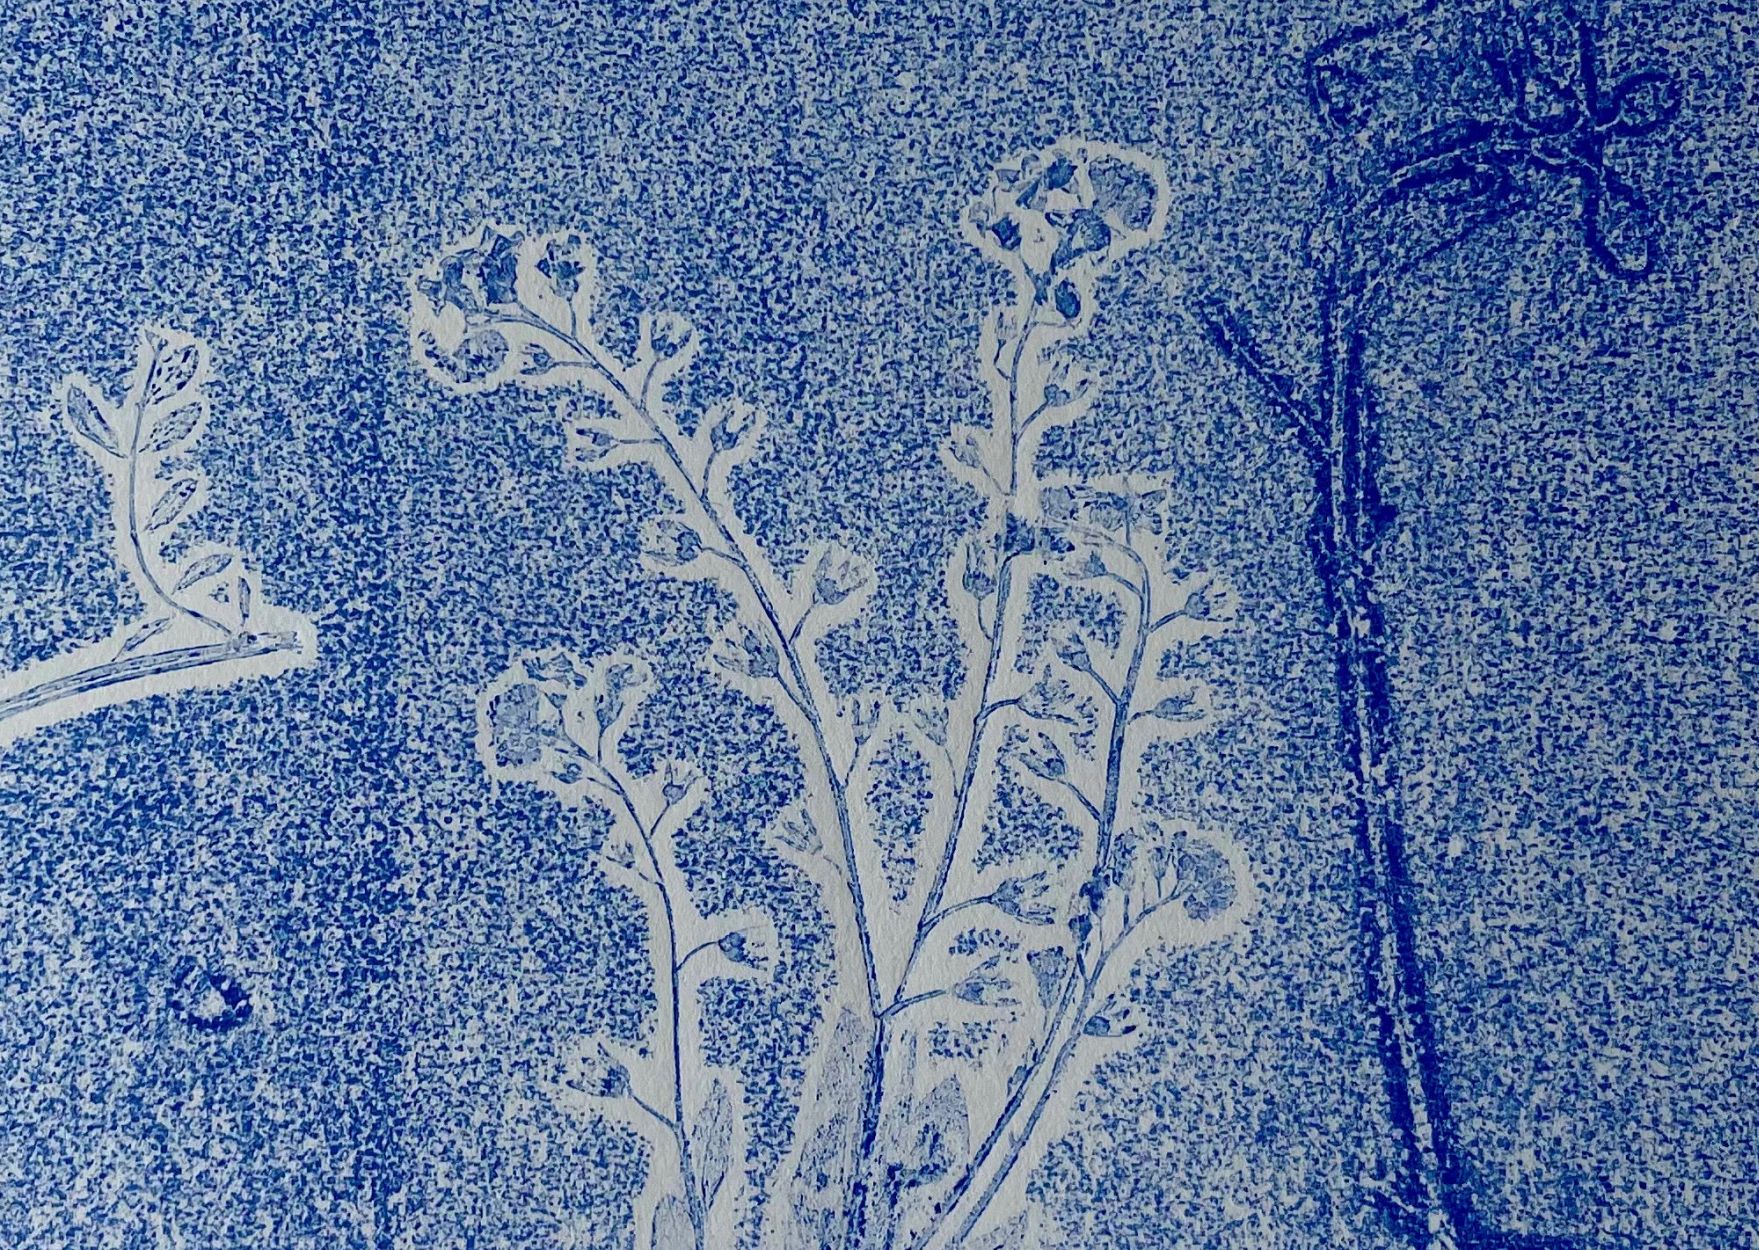 Das Bild zeigt einen Ausschnitt aus einem Linolschnitt. Auf blauem Grund sind schemenhaft Pflanzen zu erkennen.